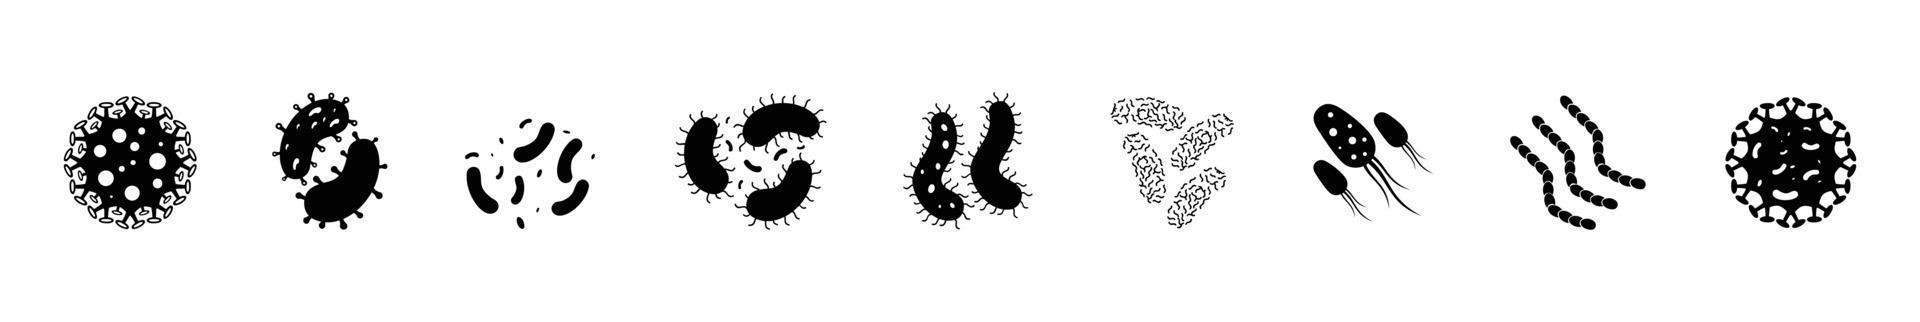 uppsättning av vektor illustration ikon bakterie, virus, koloni av bakterie, mikrobiologi tecken, frisk näring ingrediens